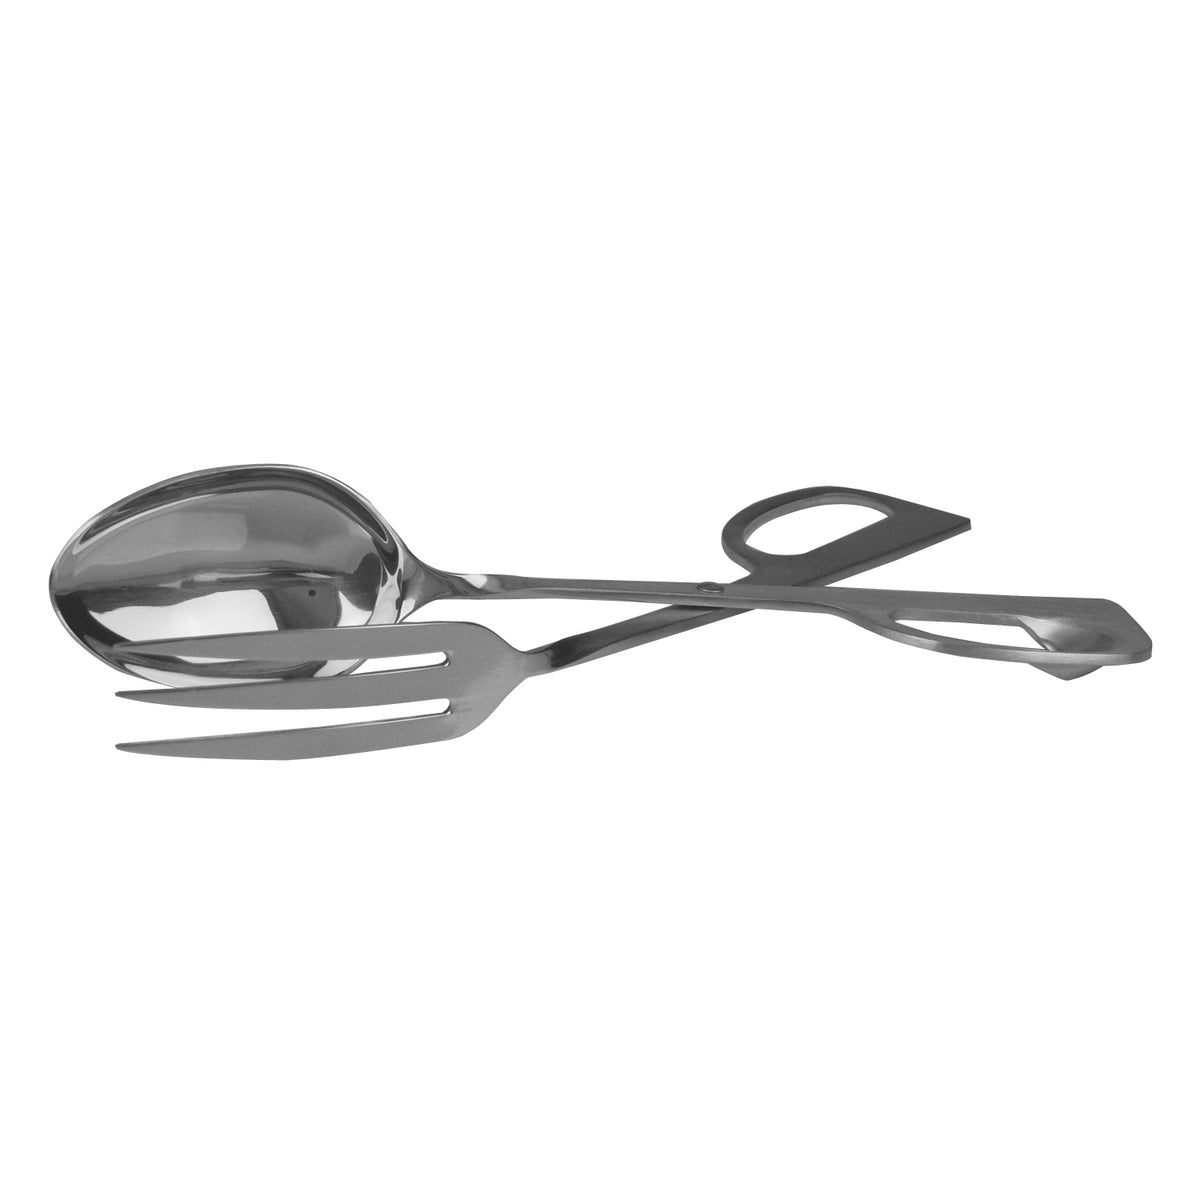 Spoon/Fork Tongs